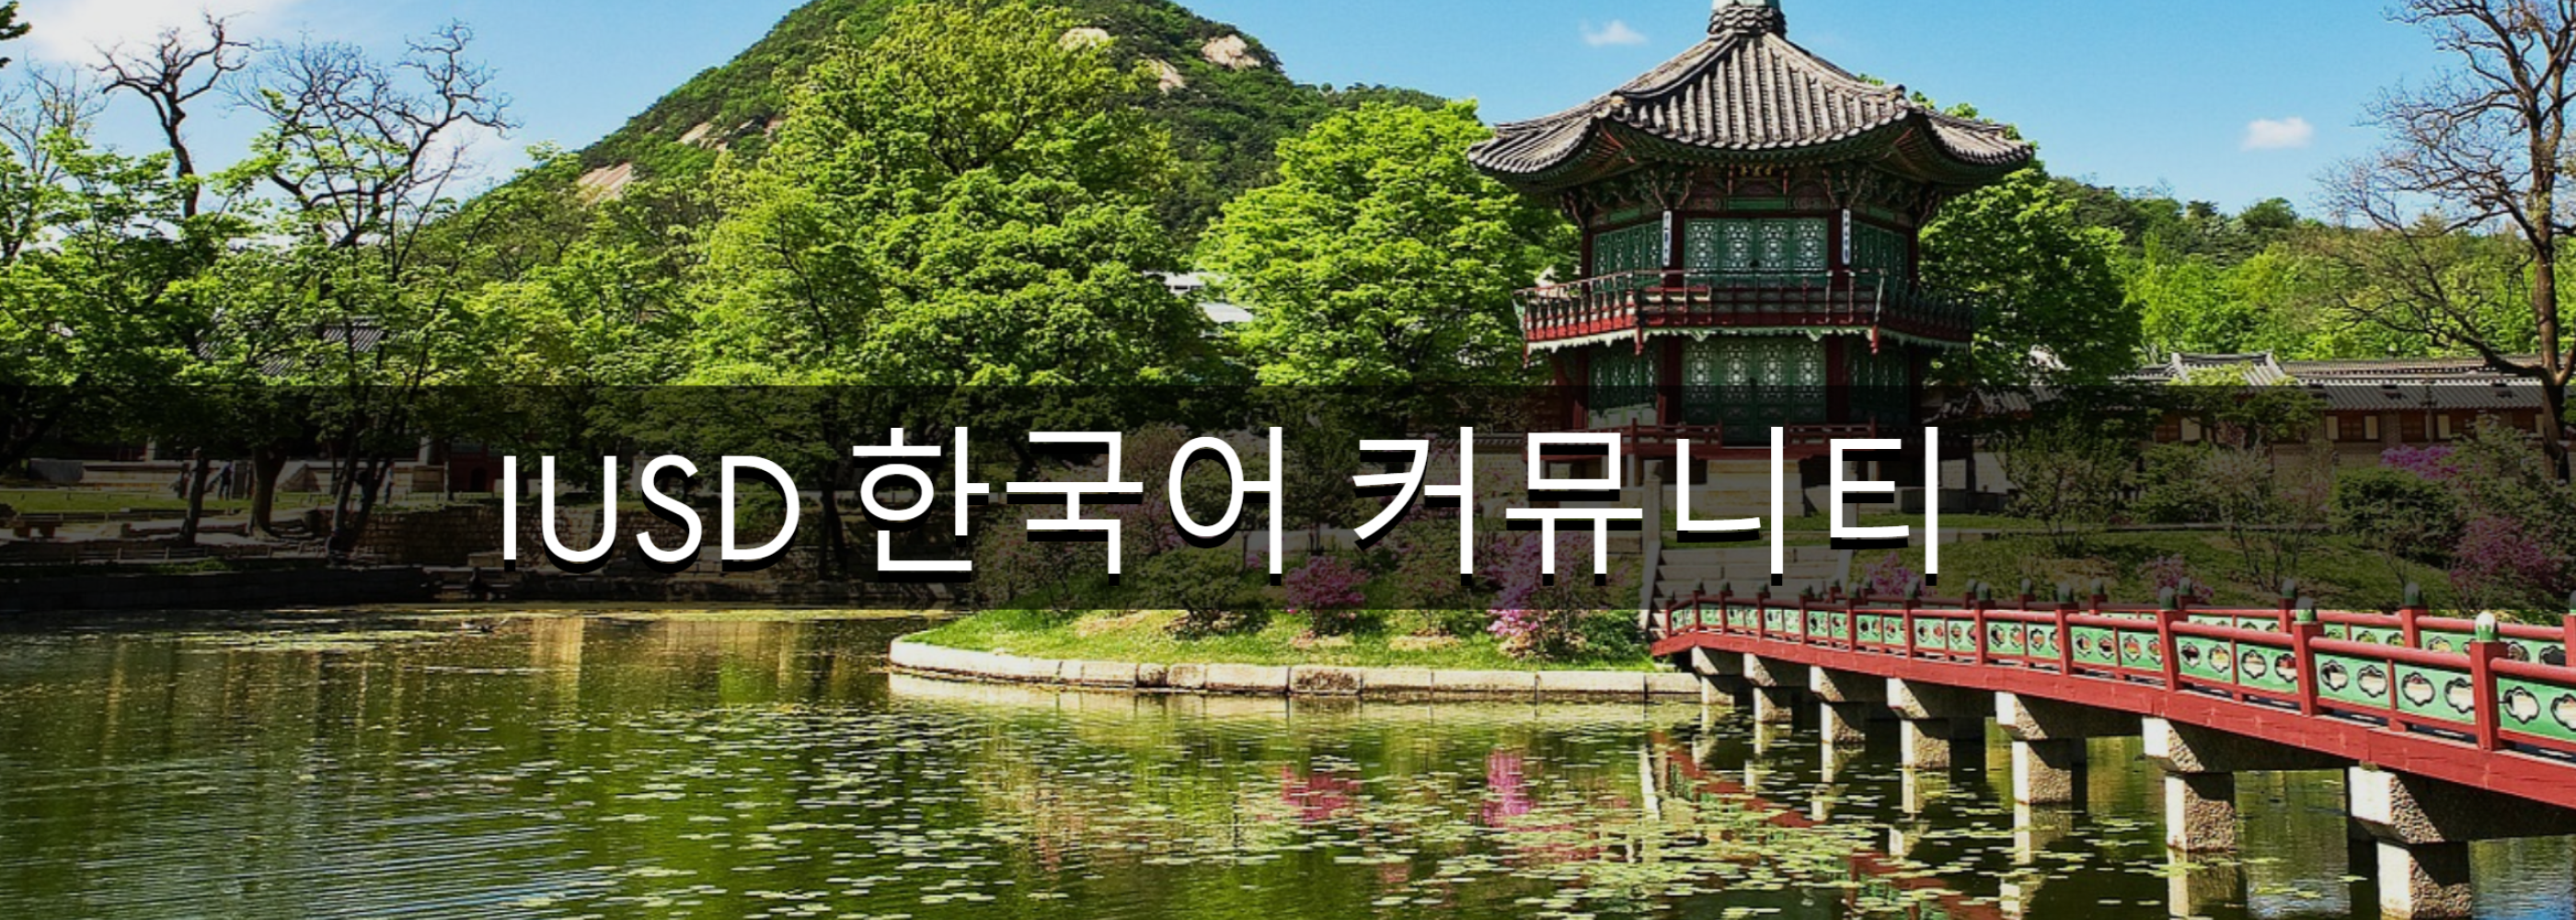 Korean Homepage Image